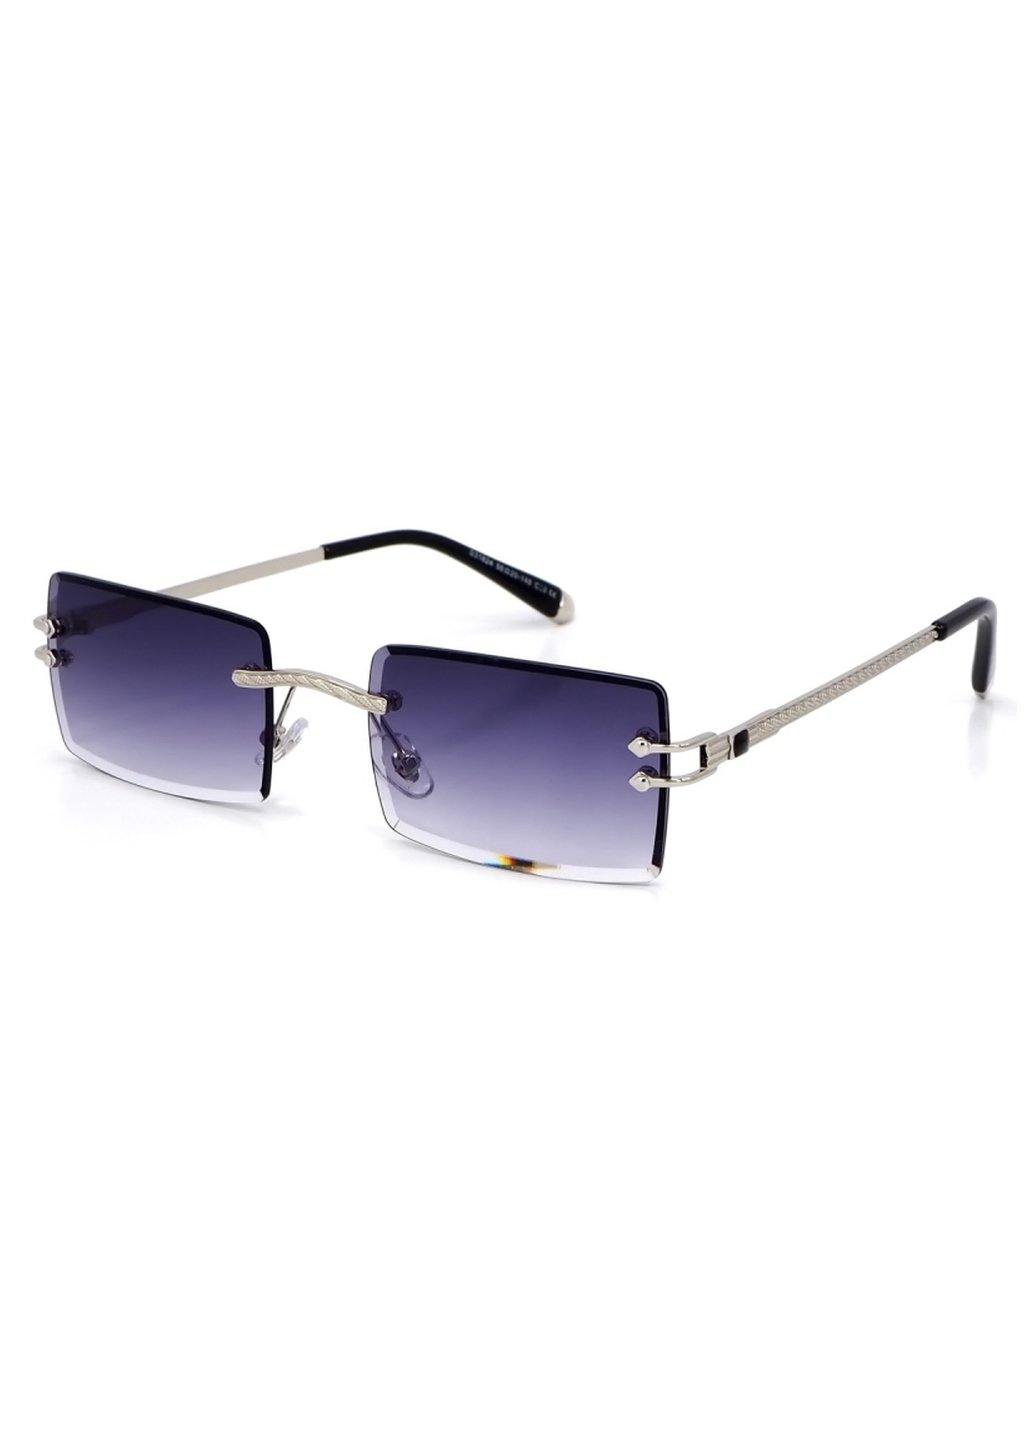 Купить Женские солнцезащитные очки Merlini с поляризацией S31824 117077 - Серый в интернет-магазине